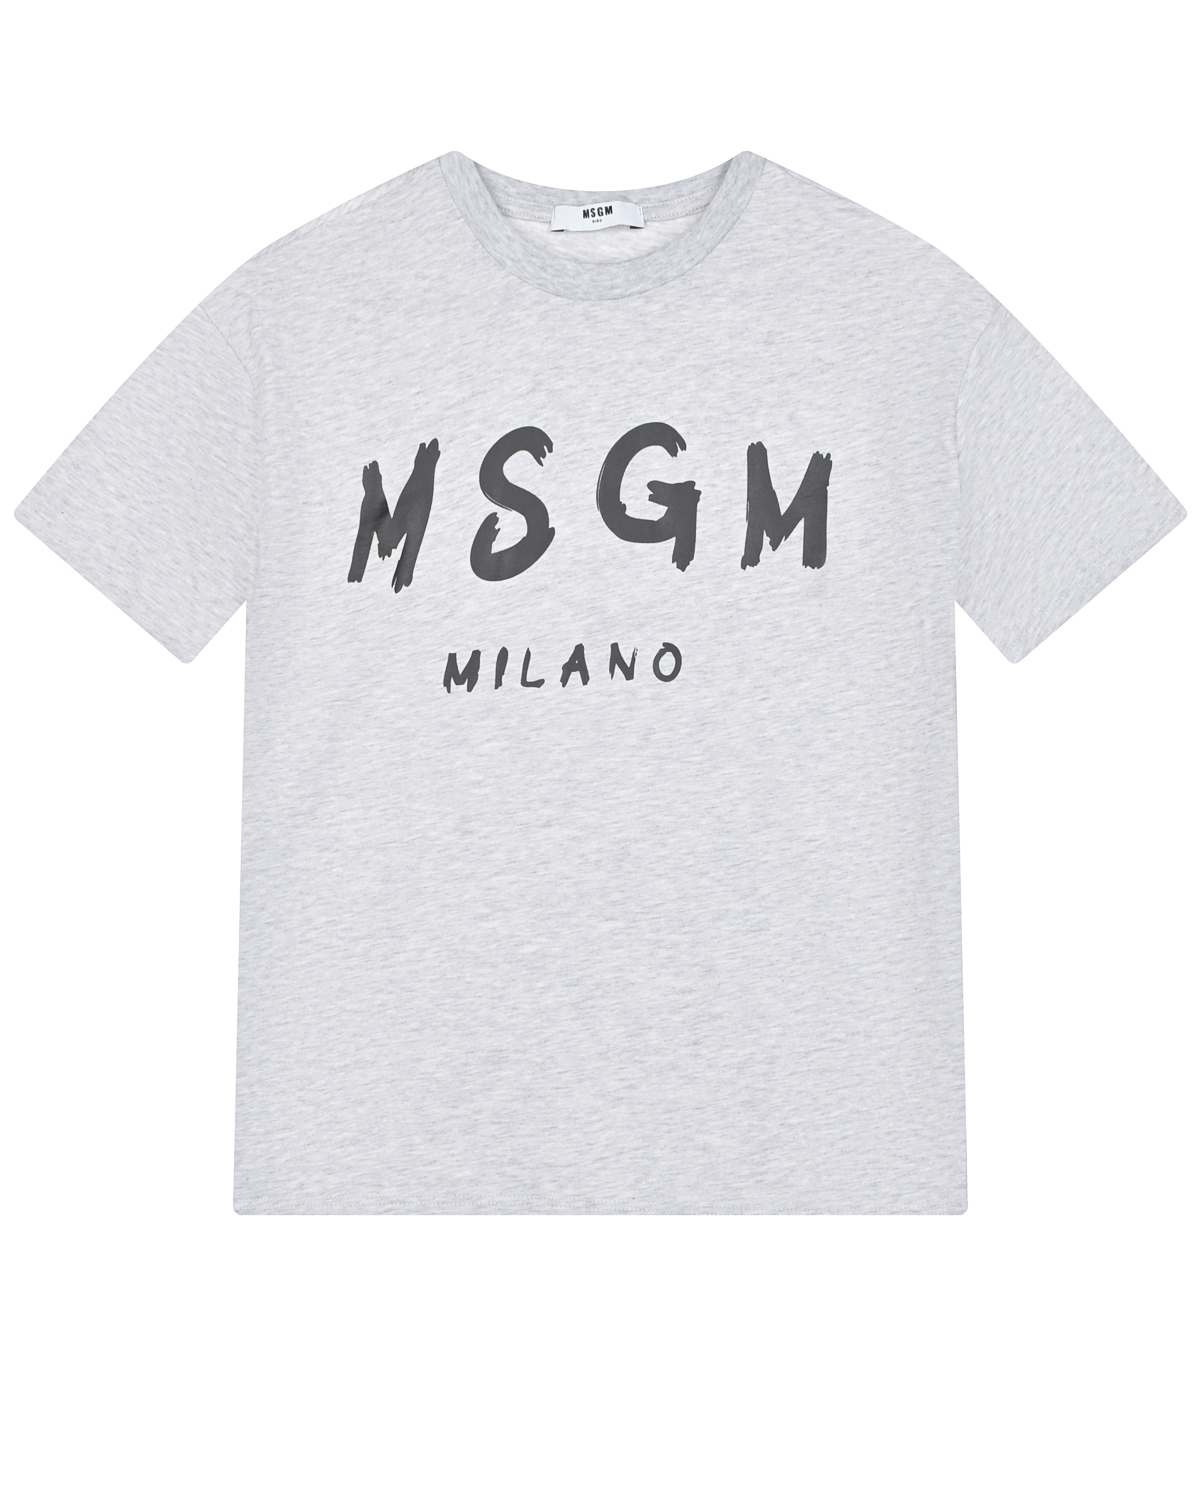 Серая футболка с крупным лого MSGM детская, размер 128, цвет серый - фото 1